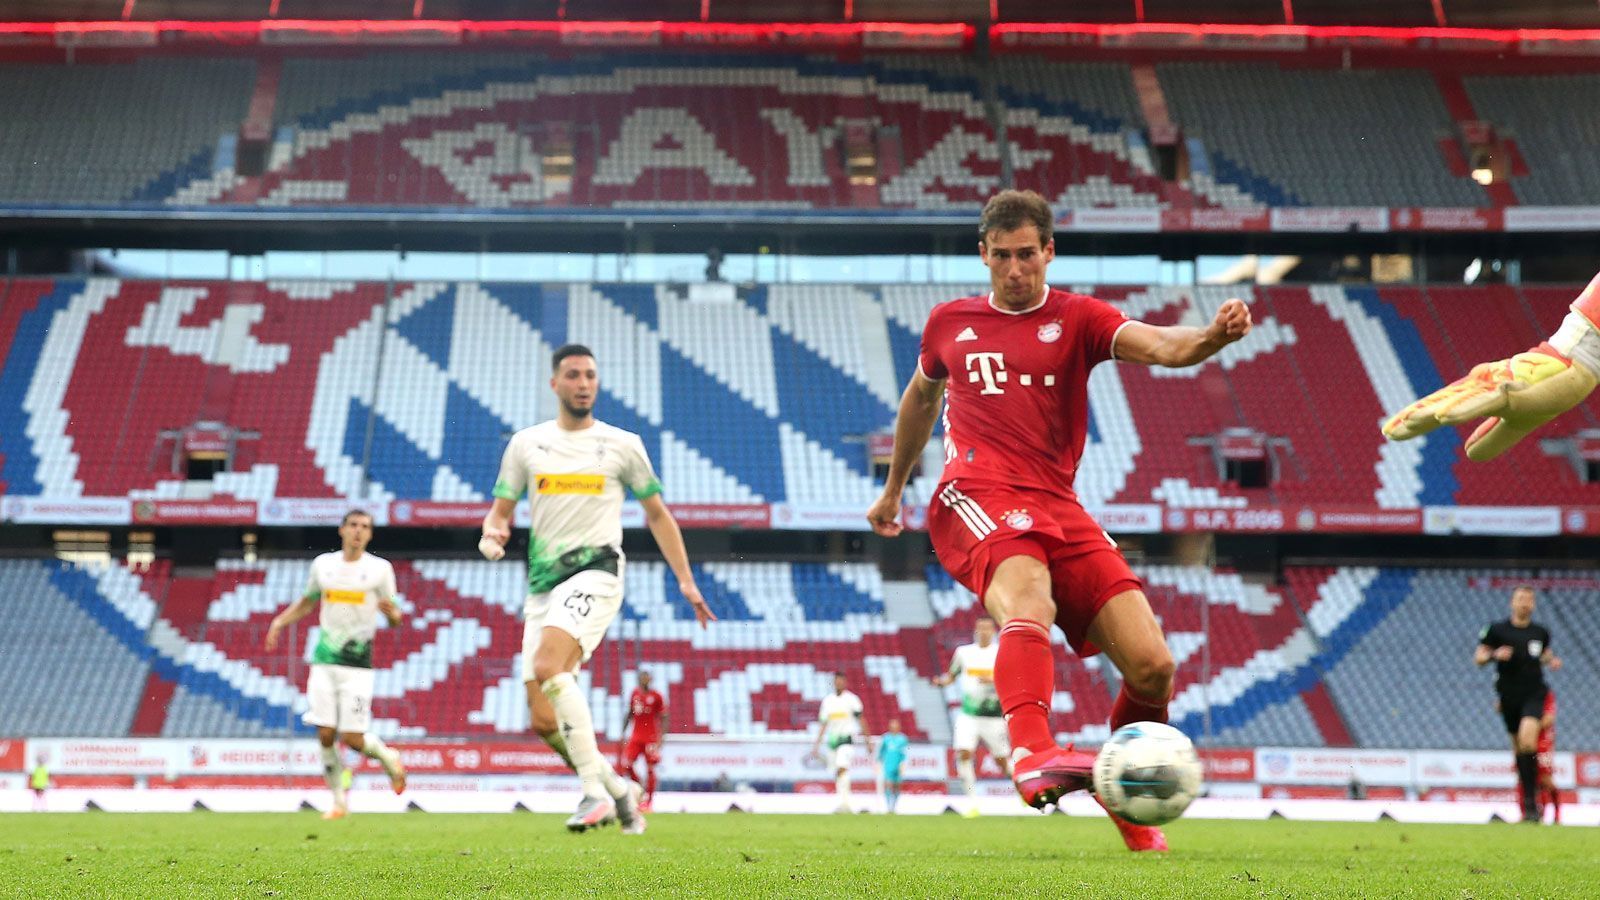 
                <strong>Stolze Bilanz</strong><br>
                Die Zahlen der Saison 2019/2020 sind beeindruckend: 24 Spiele hat der FC Bayern gewonnen, nur vier Unentschieden und vier Niederlagen stehen zu Buche. Dabei kommen die Münchner auf ein stolzes Torverhältnis von 93:31. Wird die 100 noch geknackt?
              